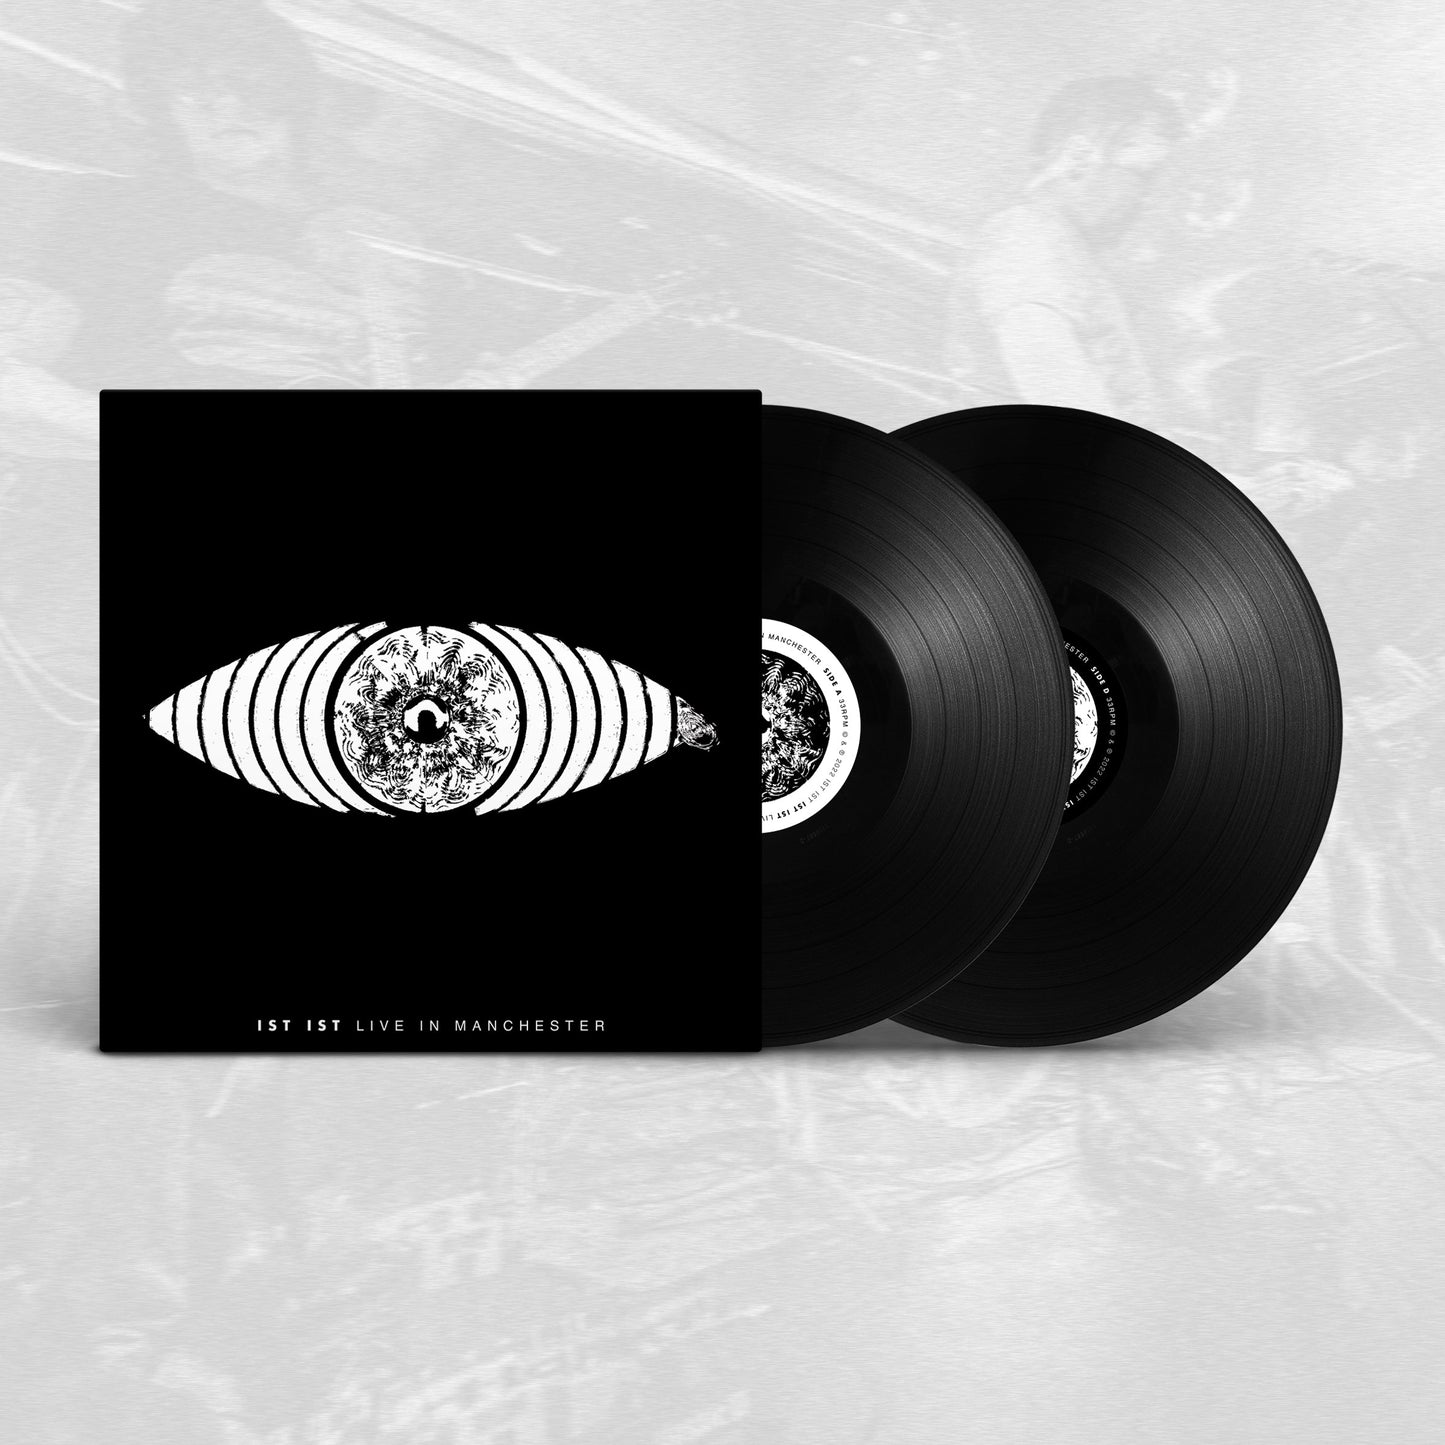 IST IST - 'Live in Manchester' - 2x LP - Vinyl - Black Heavyweight 12" Discs